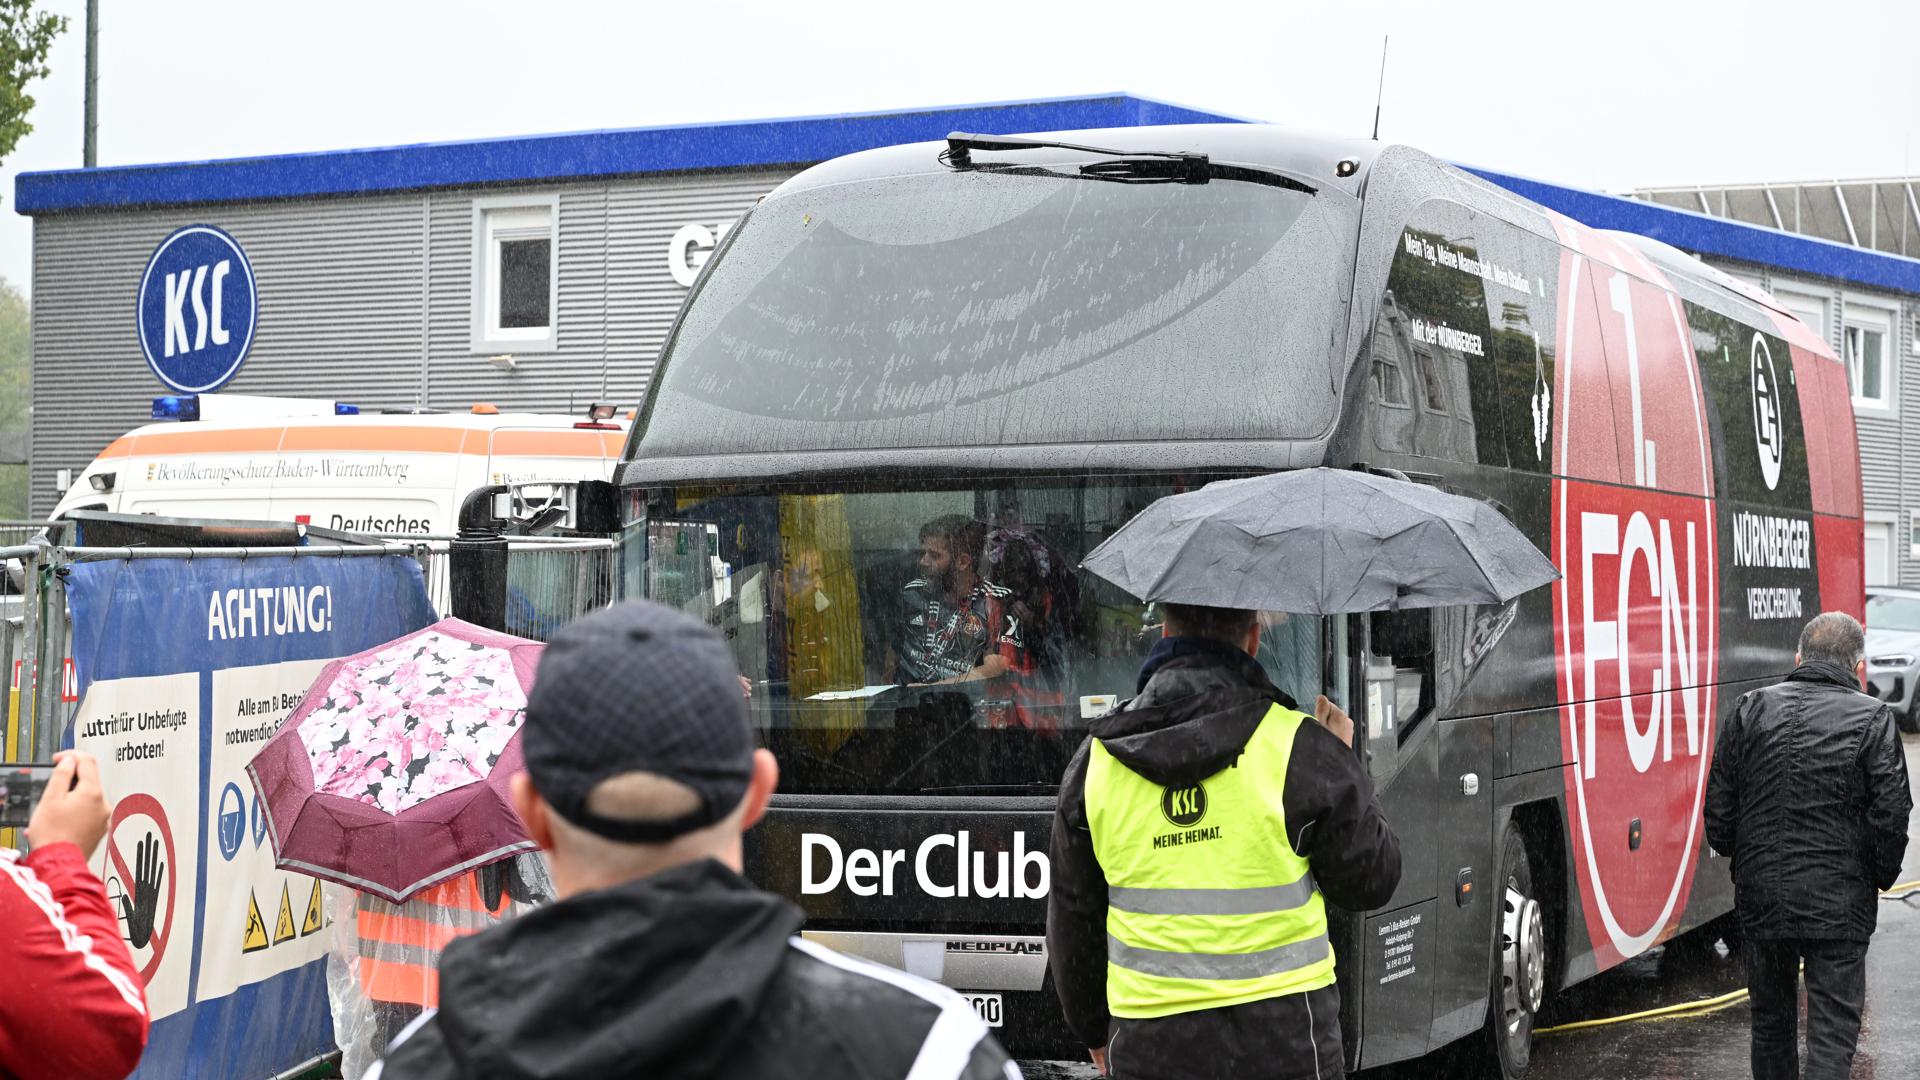 Diesen Fanbus des 1. FC Nürnberg hat die Polizei statt dem richtigen Spielerbus eskortiert. 